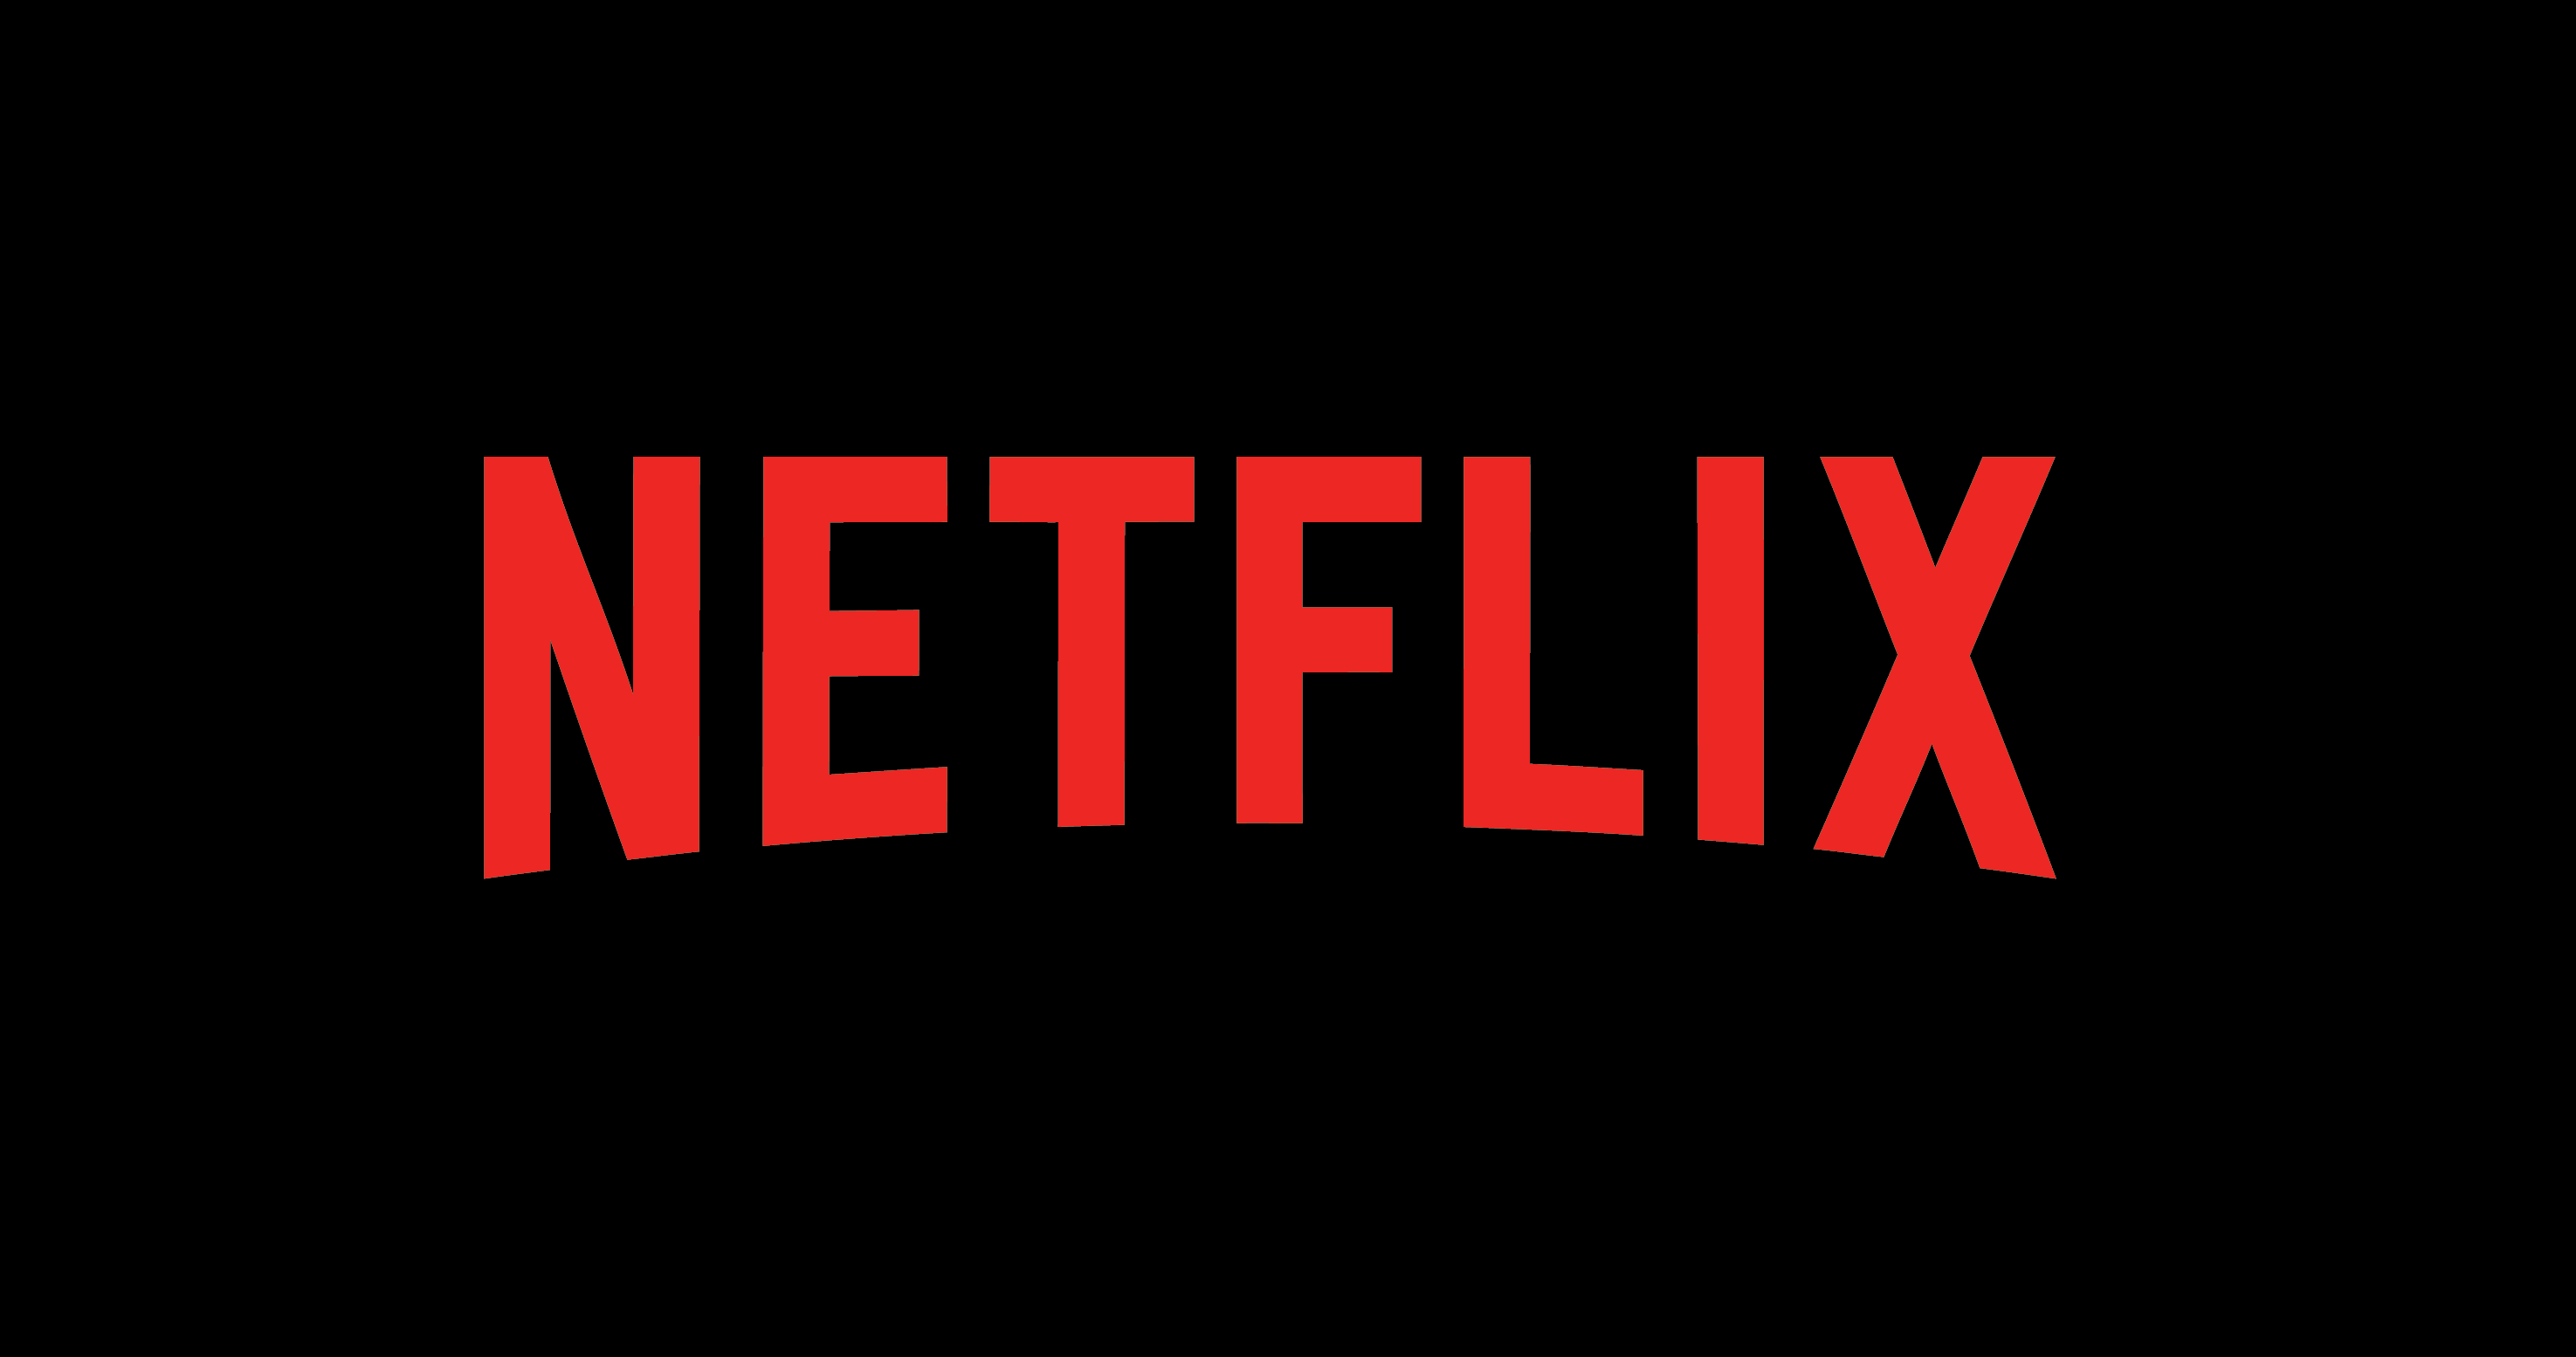 Une image montrant un logo Netflix rouge sur un arrière-plan entièrement noir